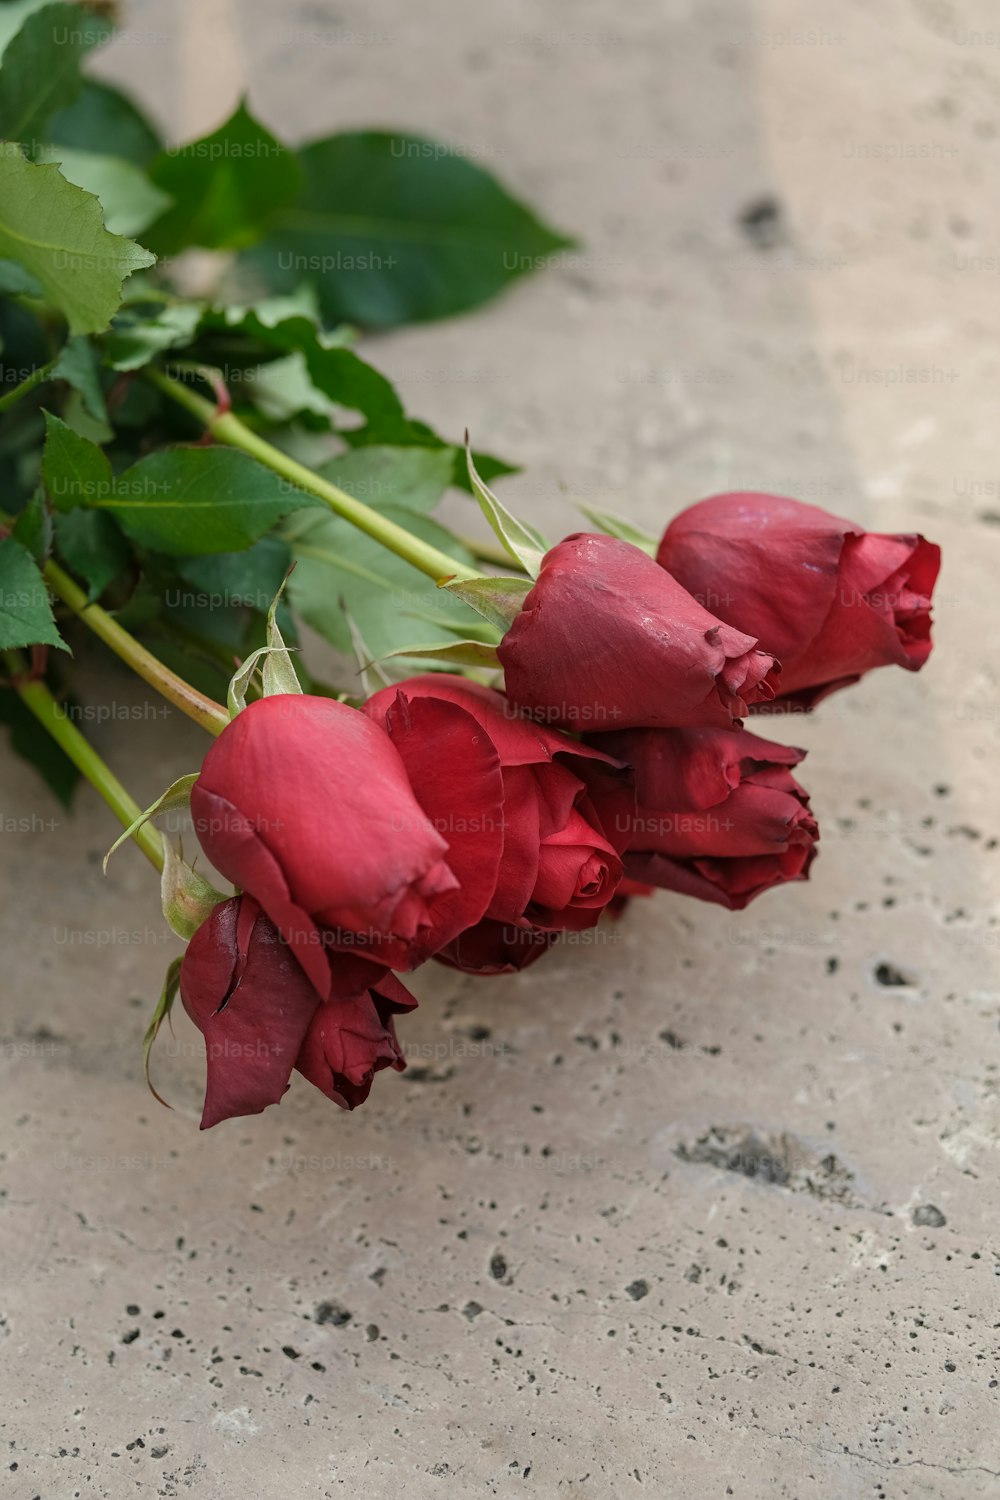 Un ramo de rosas rojas tiradas en el suelo